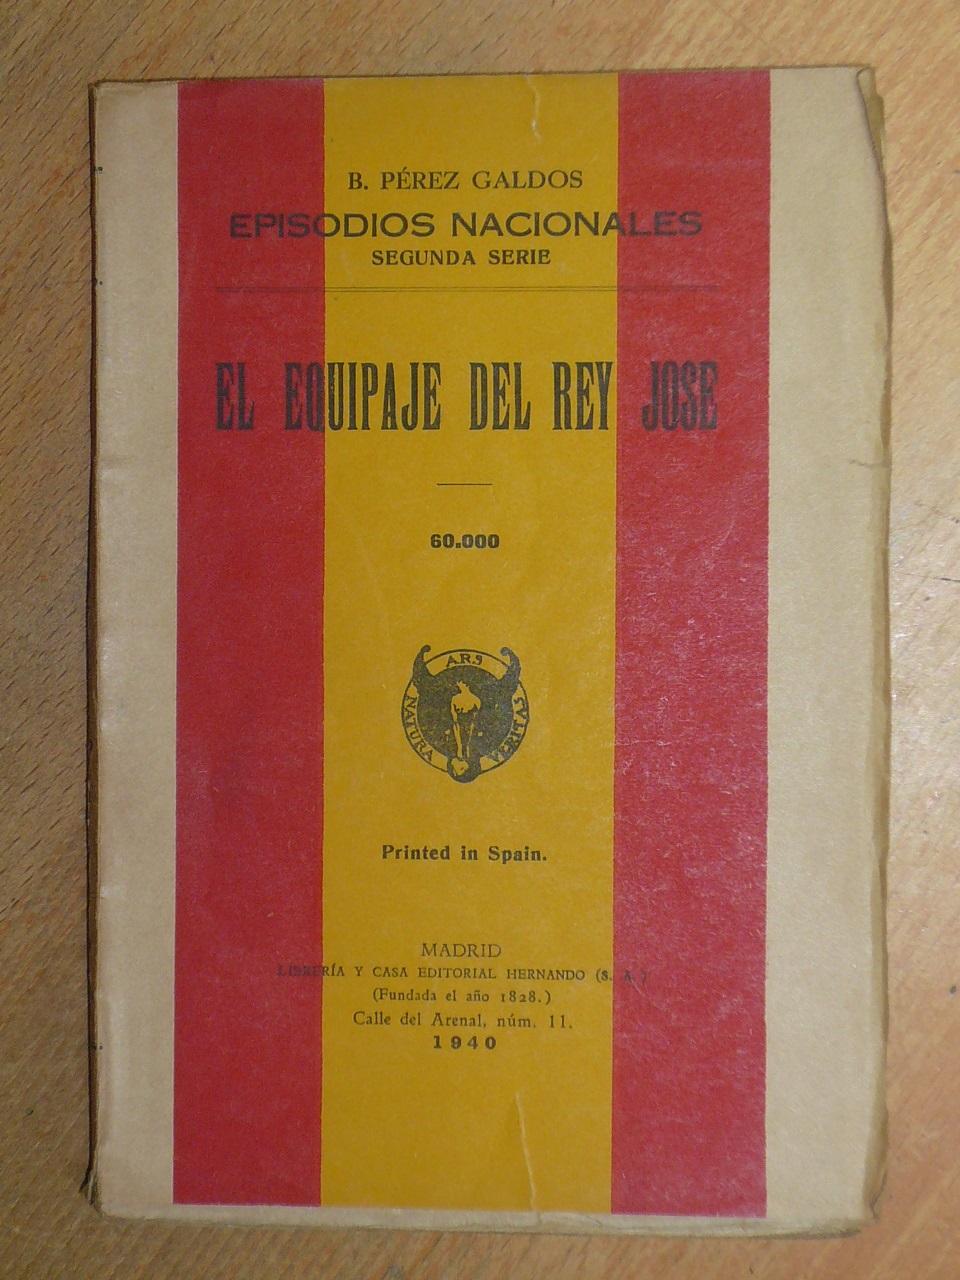 El equipaje del Rey José. - Pérez Galdós, Benito.